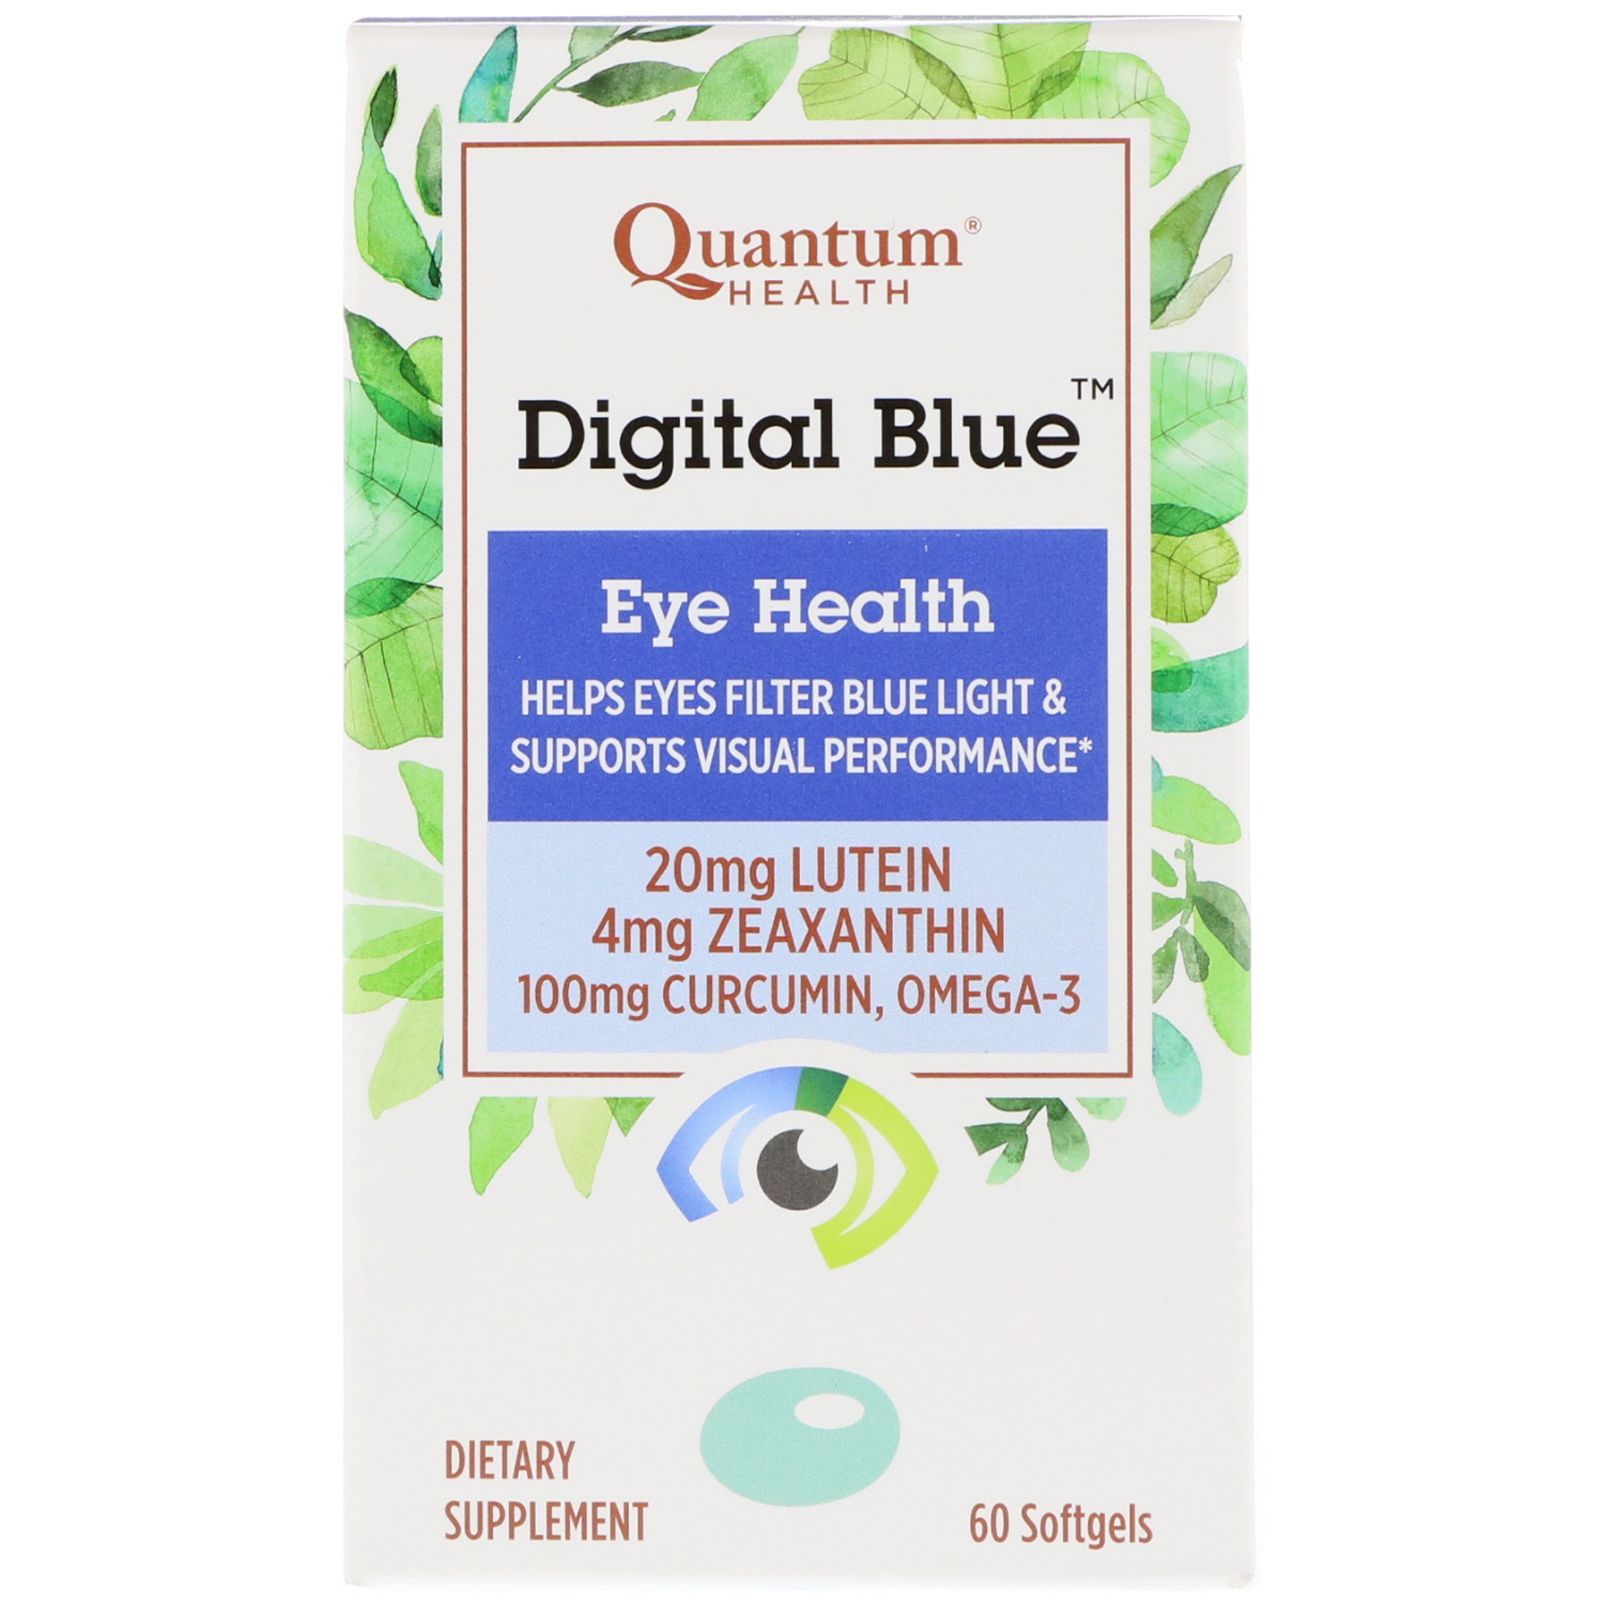 Quantum Health Digital Blue Eye Health 60 Softgels 6th generation quantum weak magnetic resonance body analyzer sub health tester